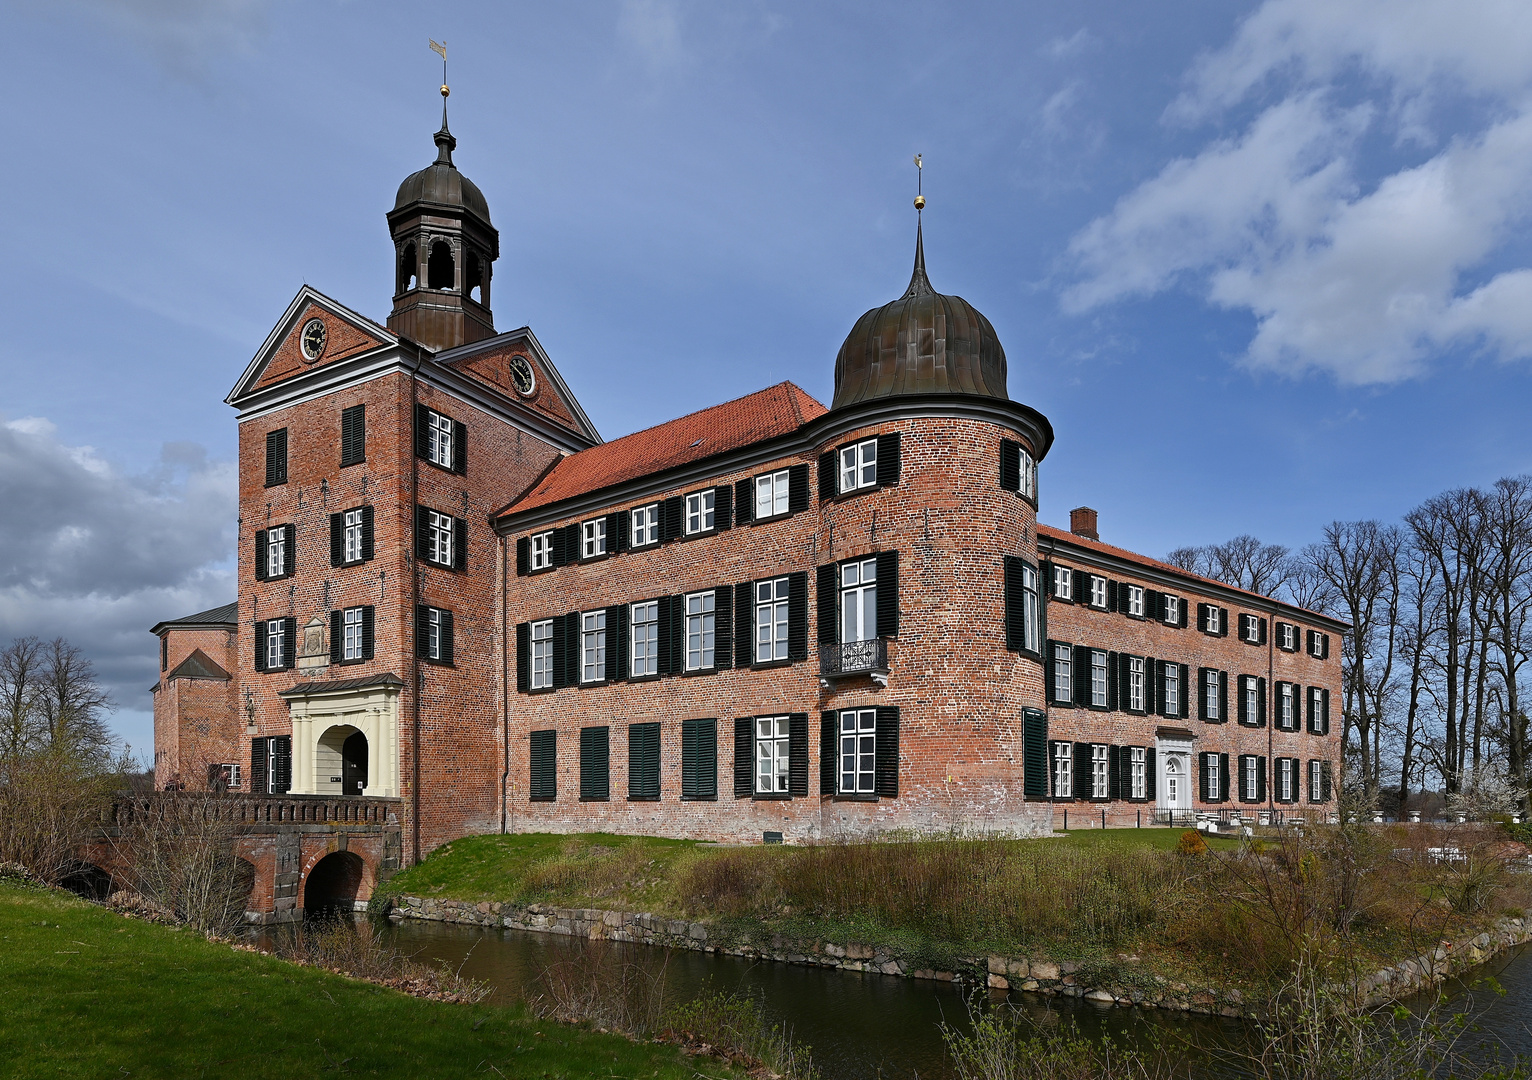 Eutiner Schloss